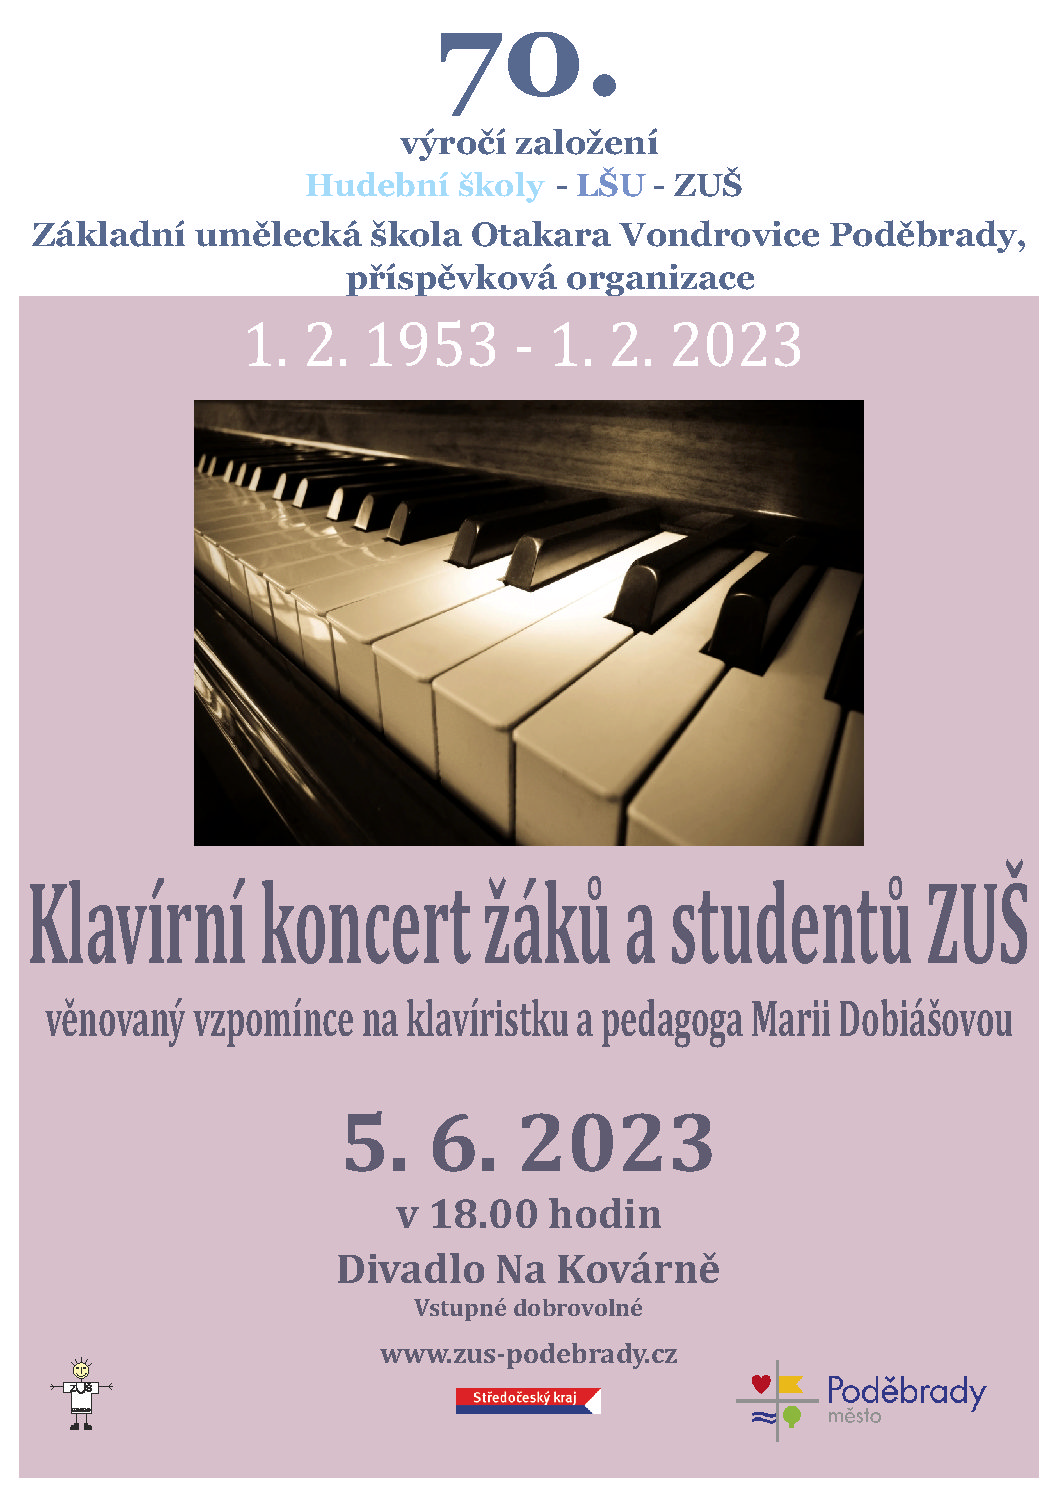 Klavírní koncert žáků a studentů ZUŠ